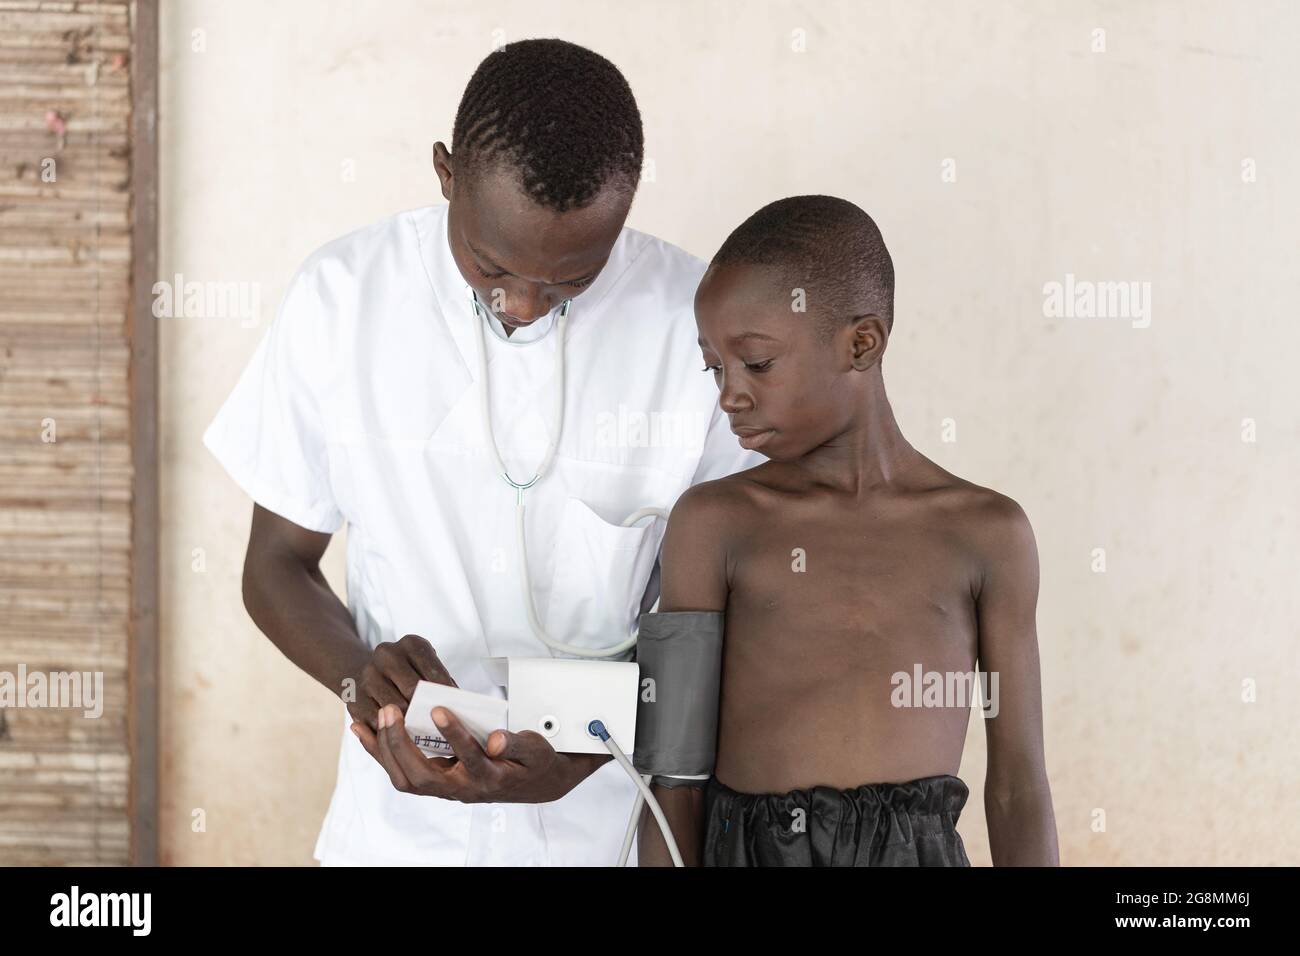 Questa è un'immagine di un infermiere africano di sesso maschile che lavora in un ospedale con uno sfigmomanometro. Un bambino nero sta ottenendo la sua pressione sanguigna misurata. Foto Stock